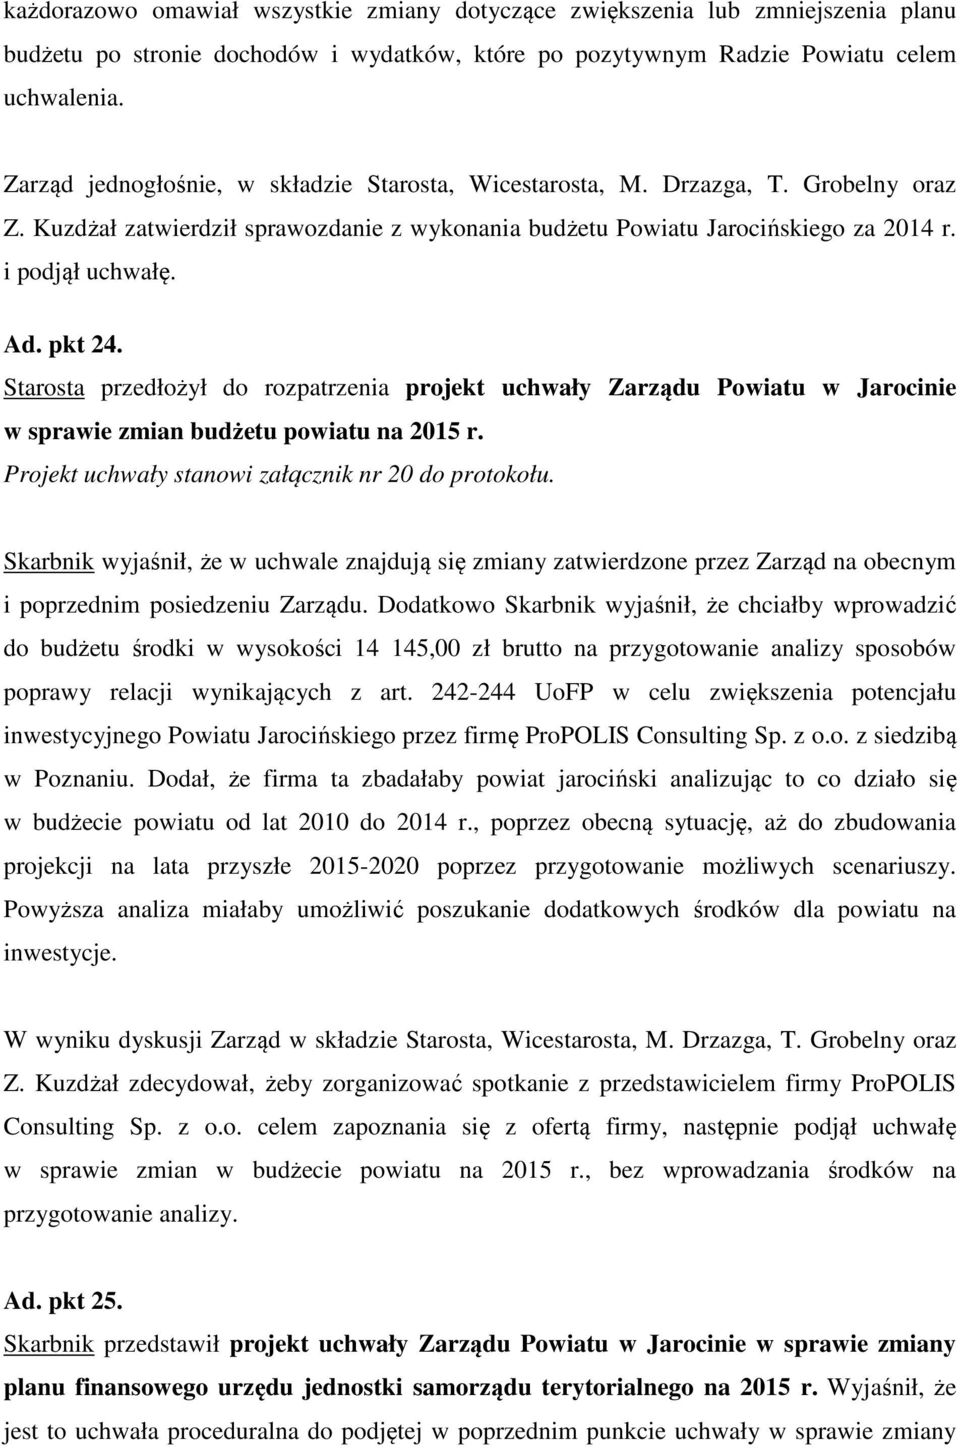 pkt 24. Starosta przedłożył do rozpatrzenia projekt uchwały Zarządu Powiatu w Jarocinie w sprawie zmian budżetu powiatu na 2015 r. Projekt uchwały stanowi załącznik nr 20 do protokołu.